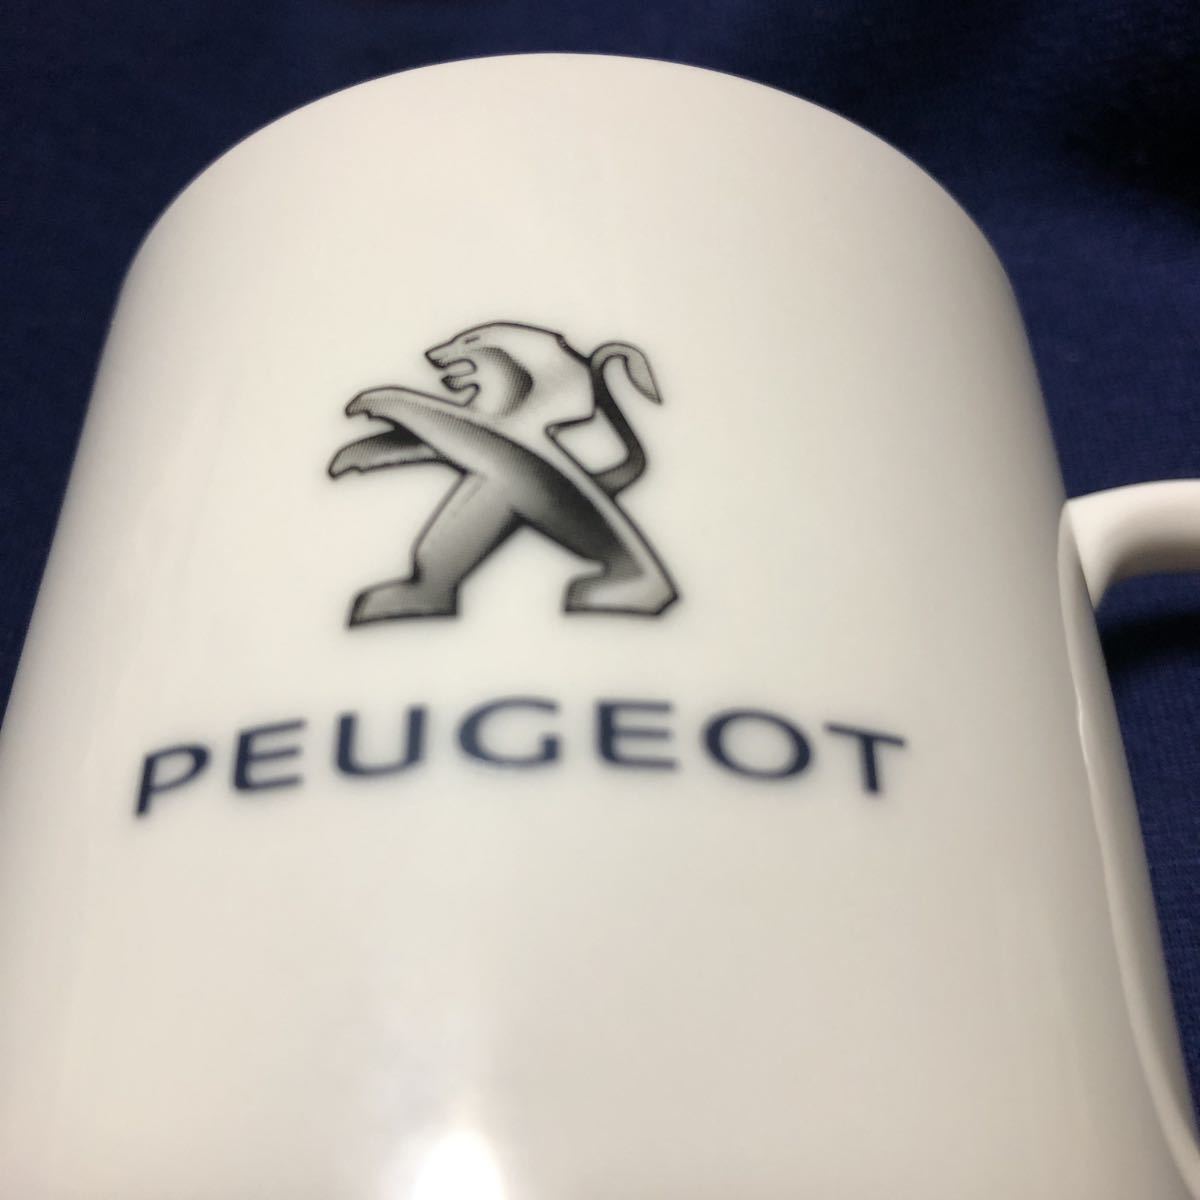 * редкость не продается * PEUGEOT Peugeot керамика кружка Novelty 